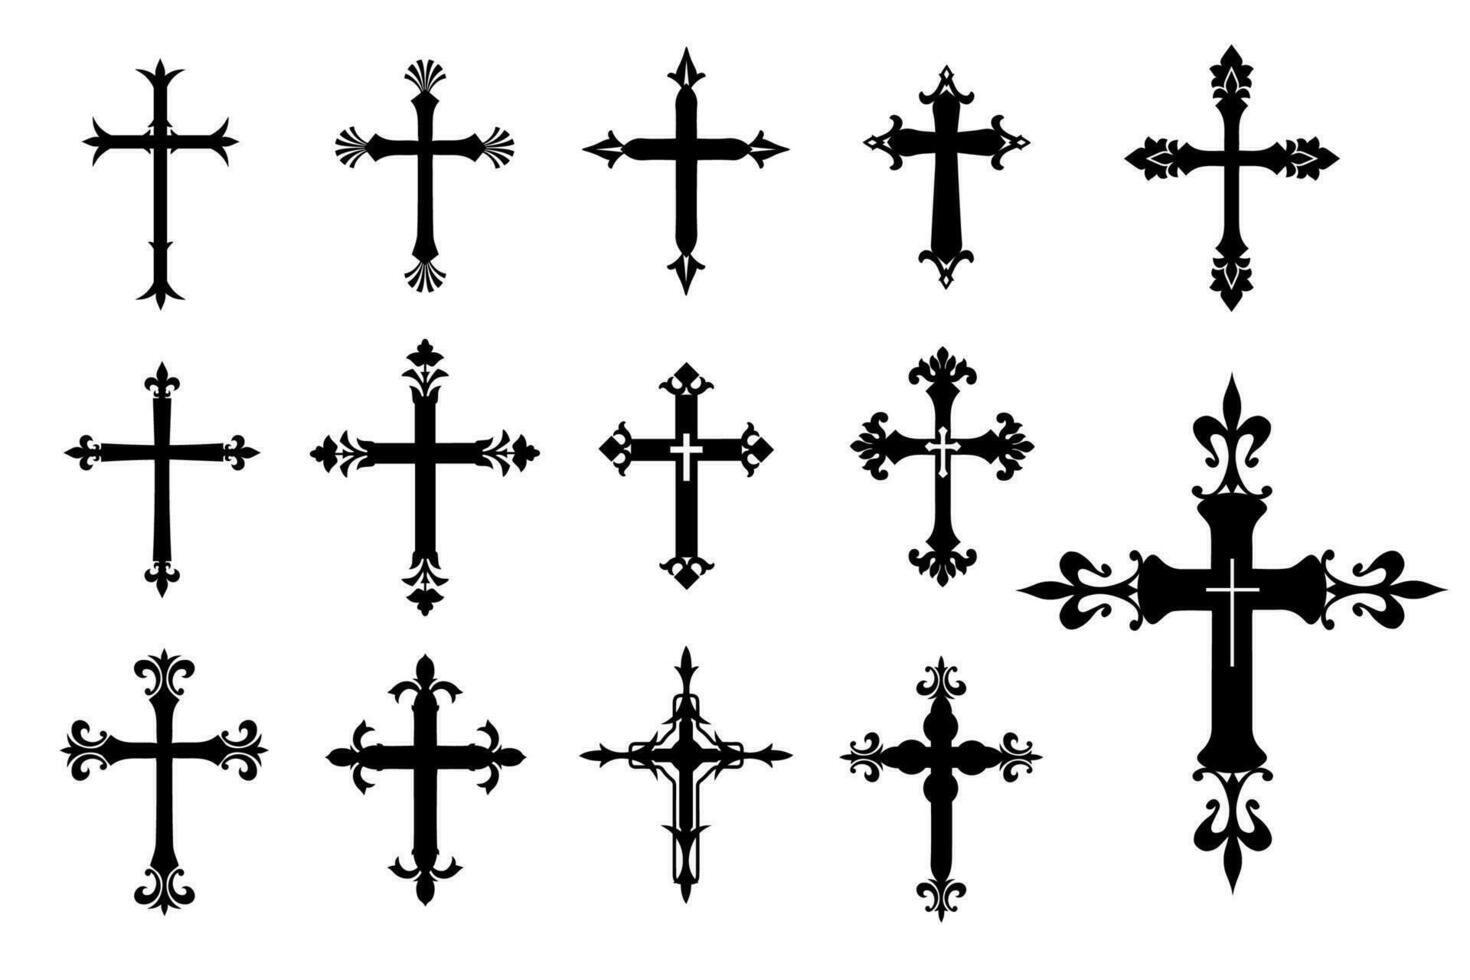 décoratif crucifix religion catholique symbole, Christian des croix. orthodoxe Foi église traverser Icônes conception, isolé plat ensemble. vecteur illustration.